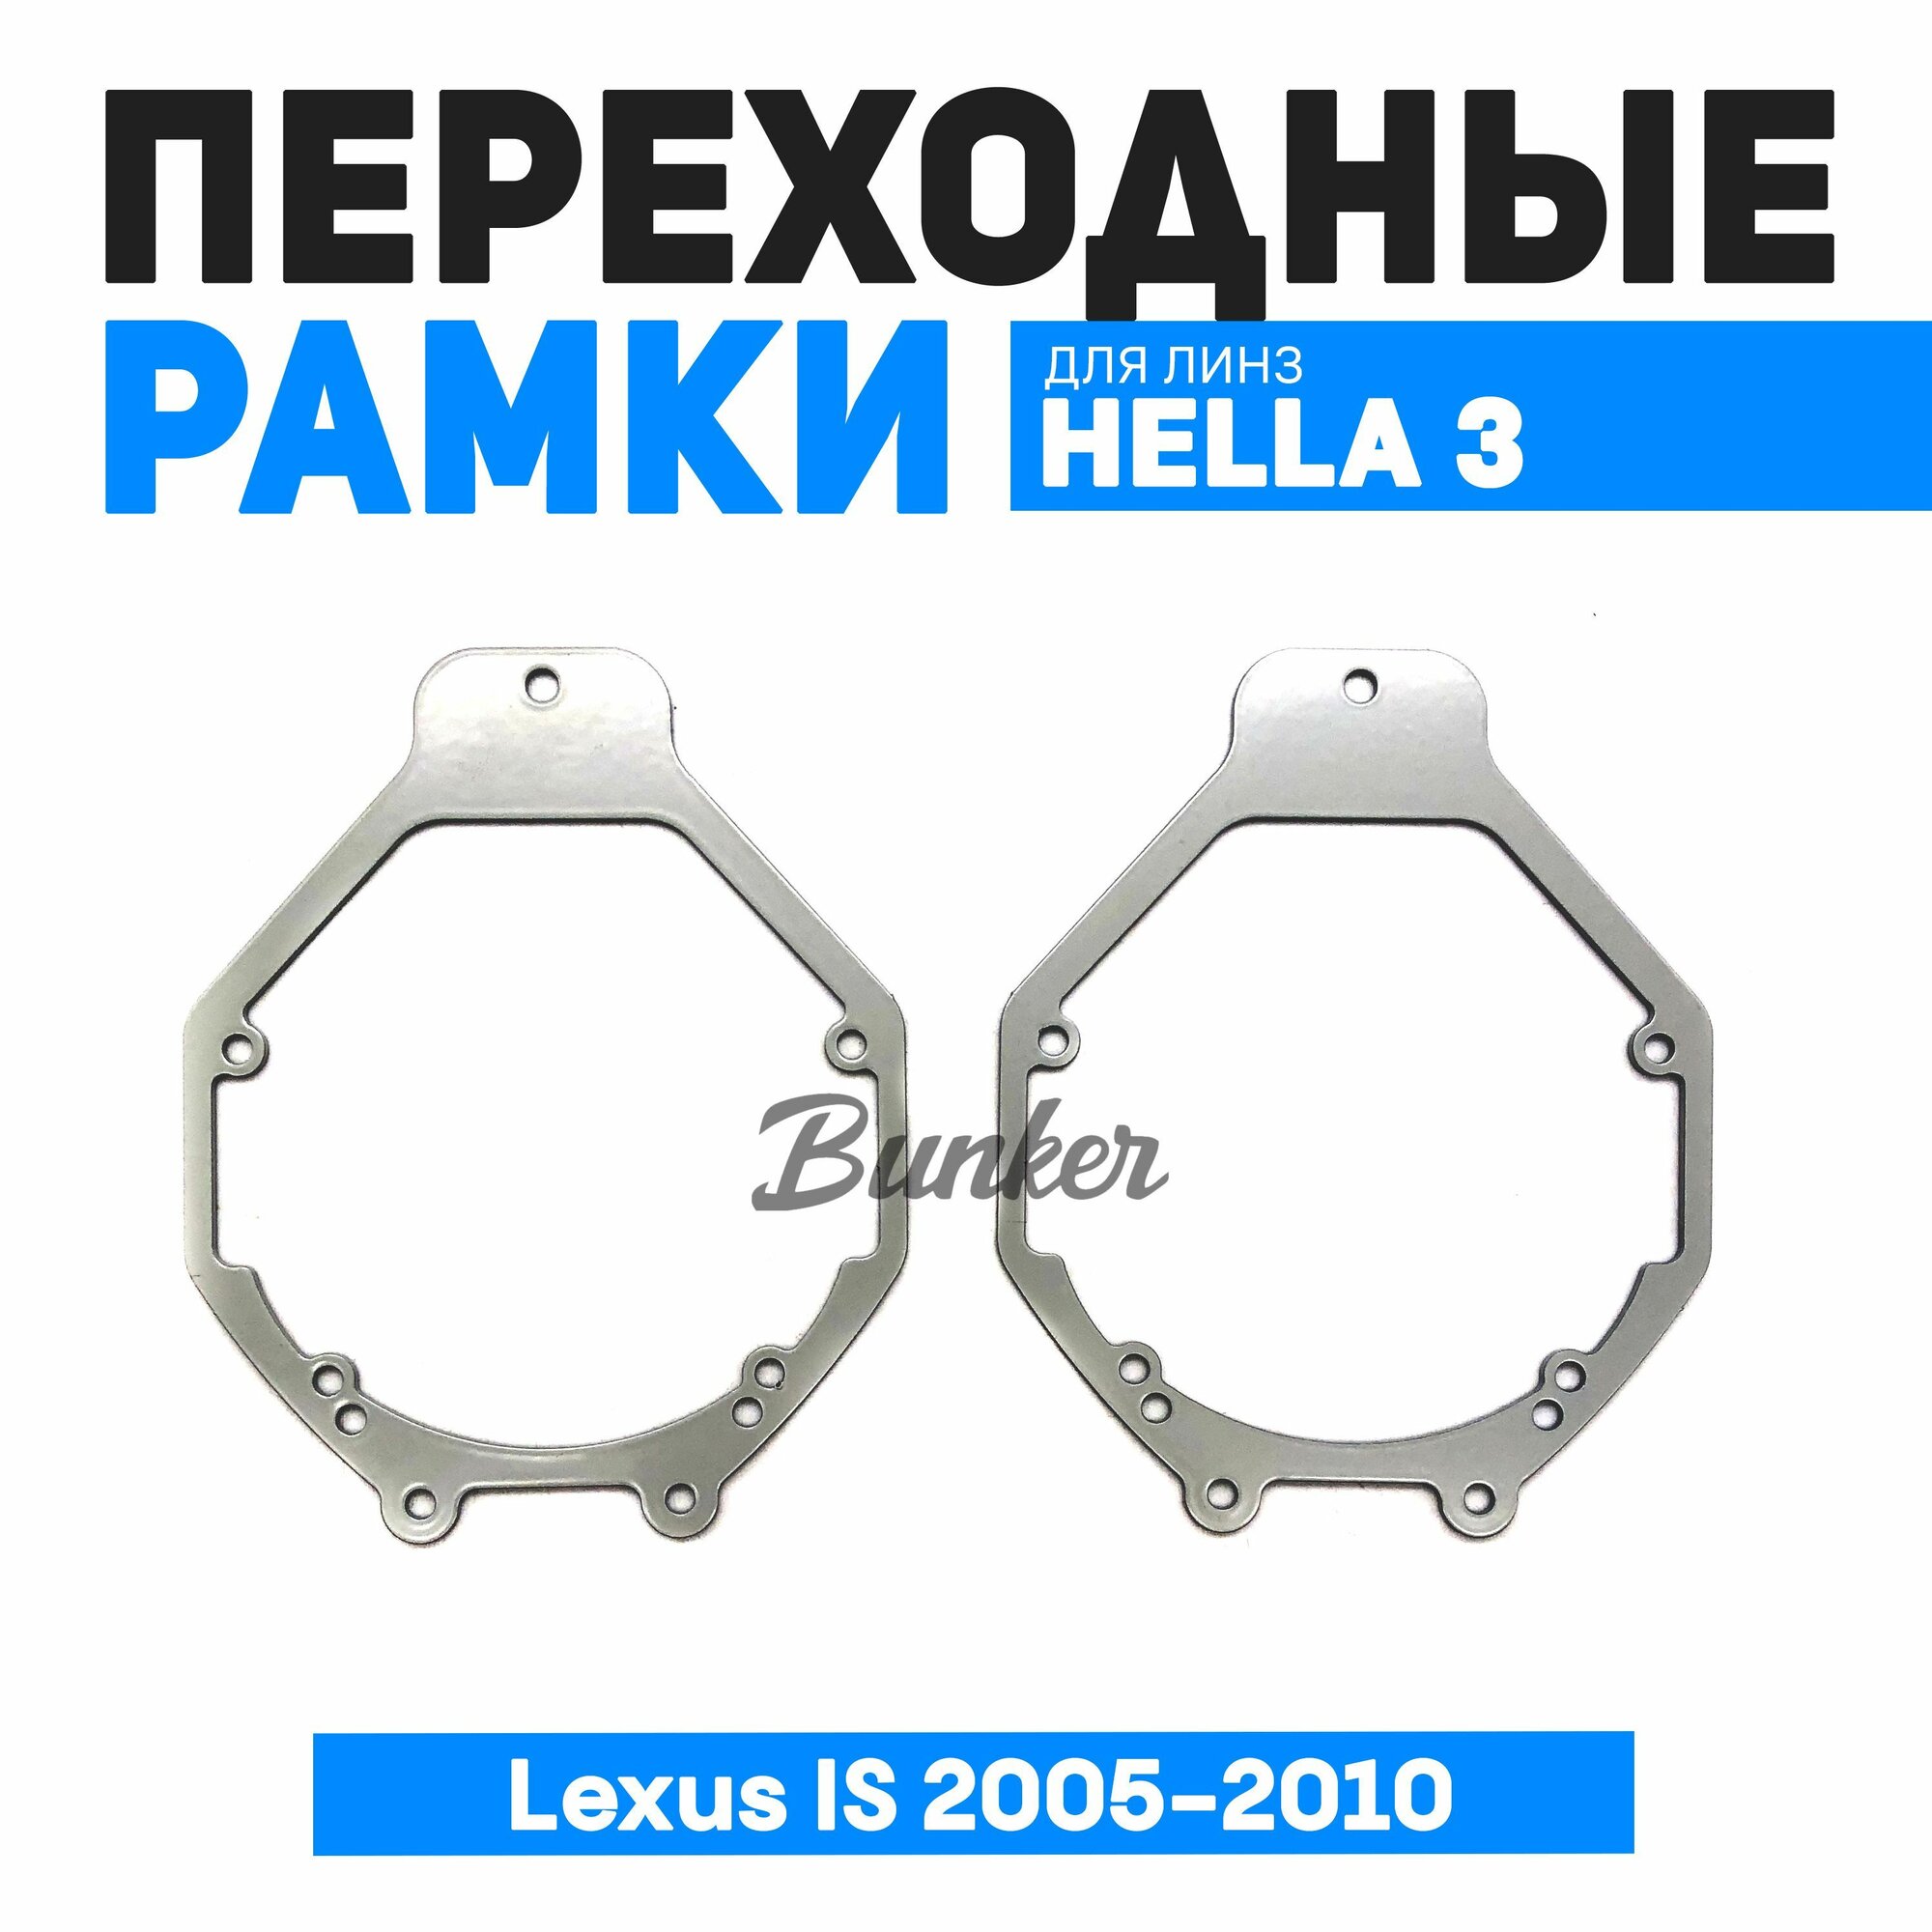 Переходные рамки для замены линз Lexus IS 2005-2010 без AFS